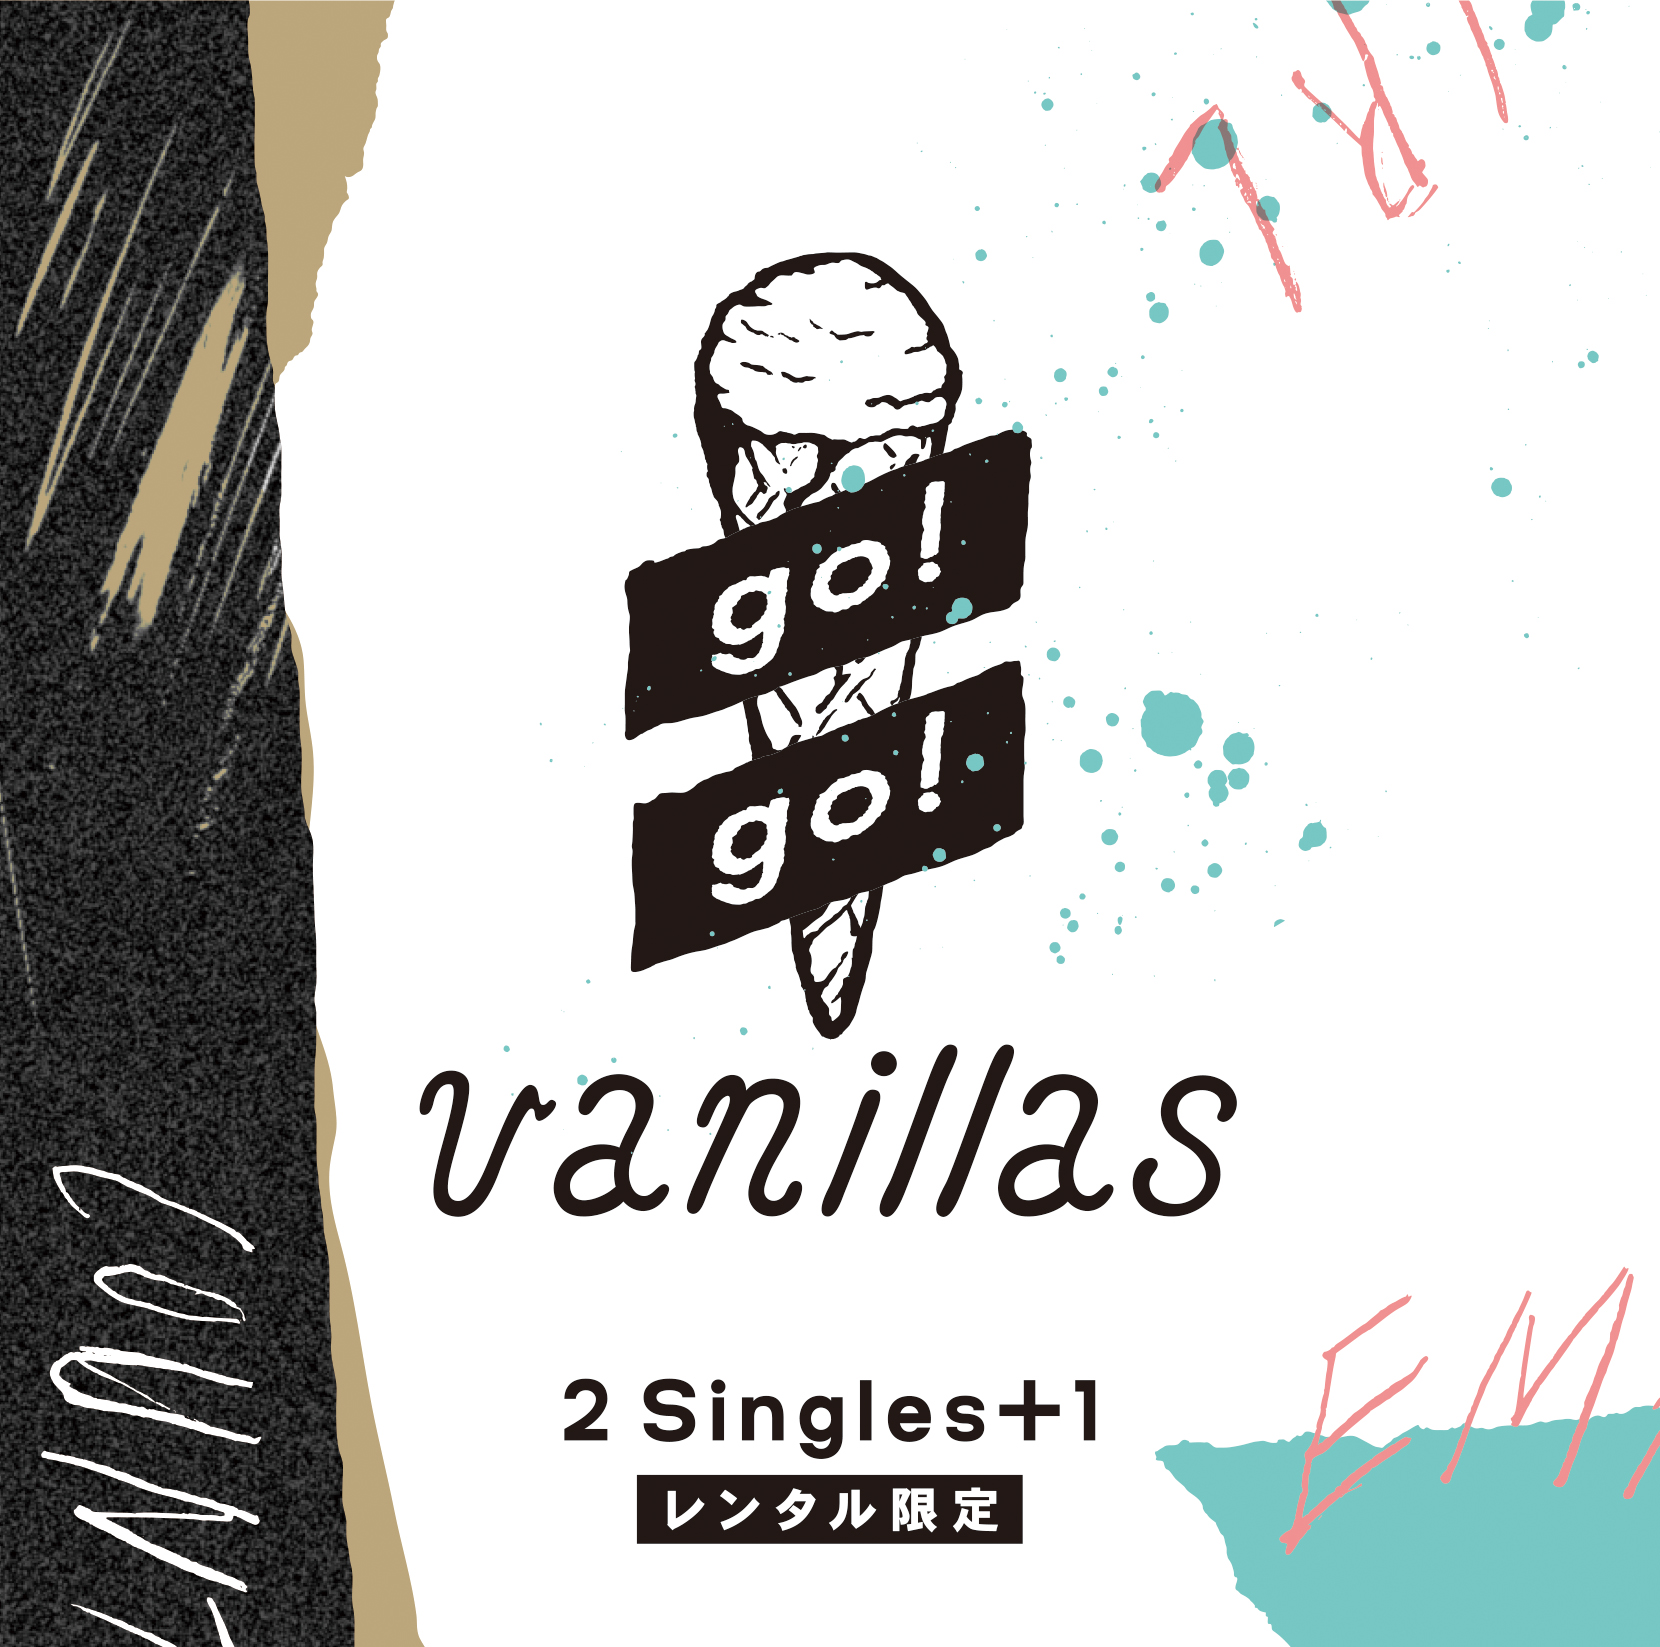 Tsutaya限定レンタルアルバム 2 Singles 1 10 28よりレンタル 開始 ツタロックスペシャルライブ出演決定 Go Go Vanillas